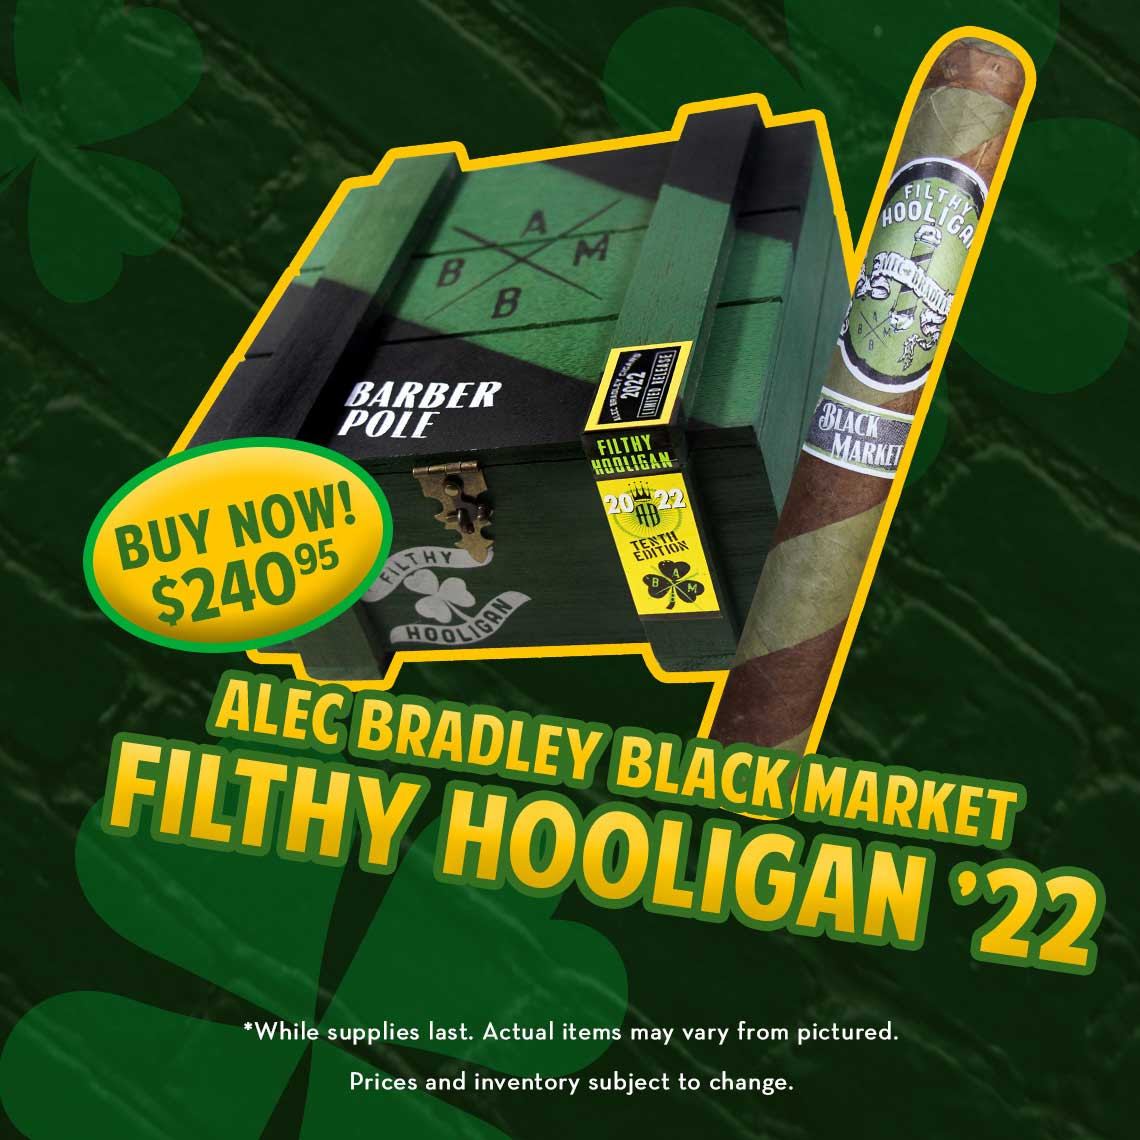 Alec Bradley Black Market Filthy Hooligan Cigars